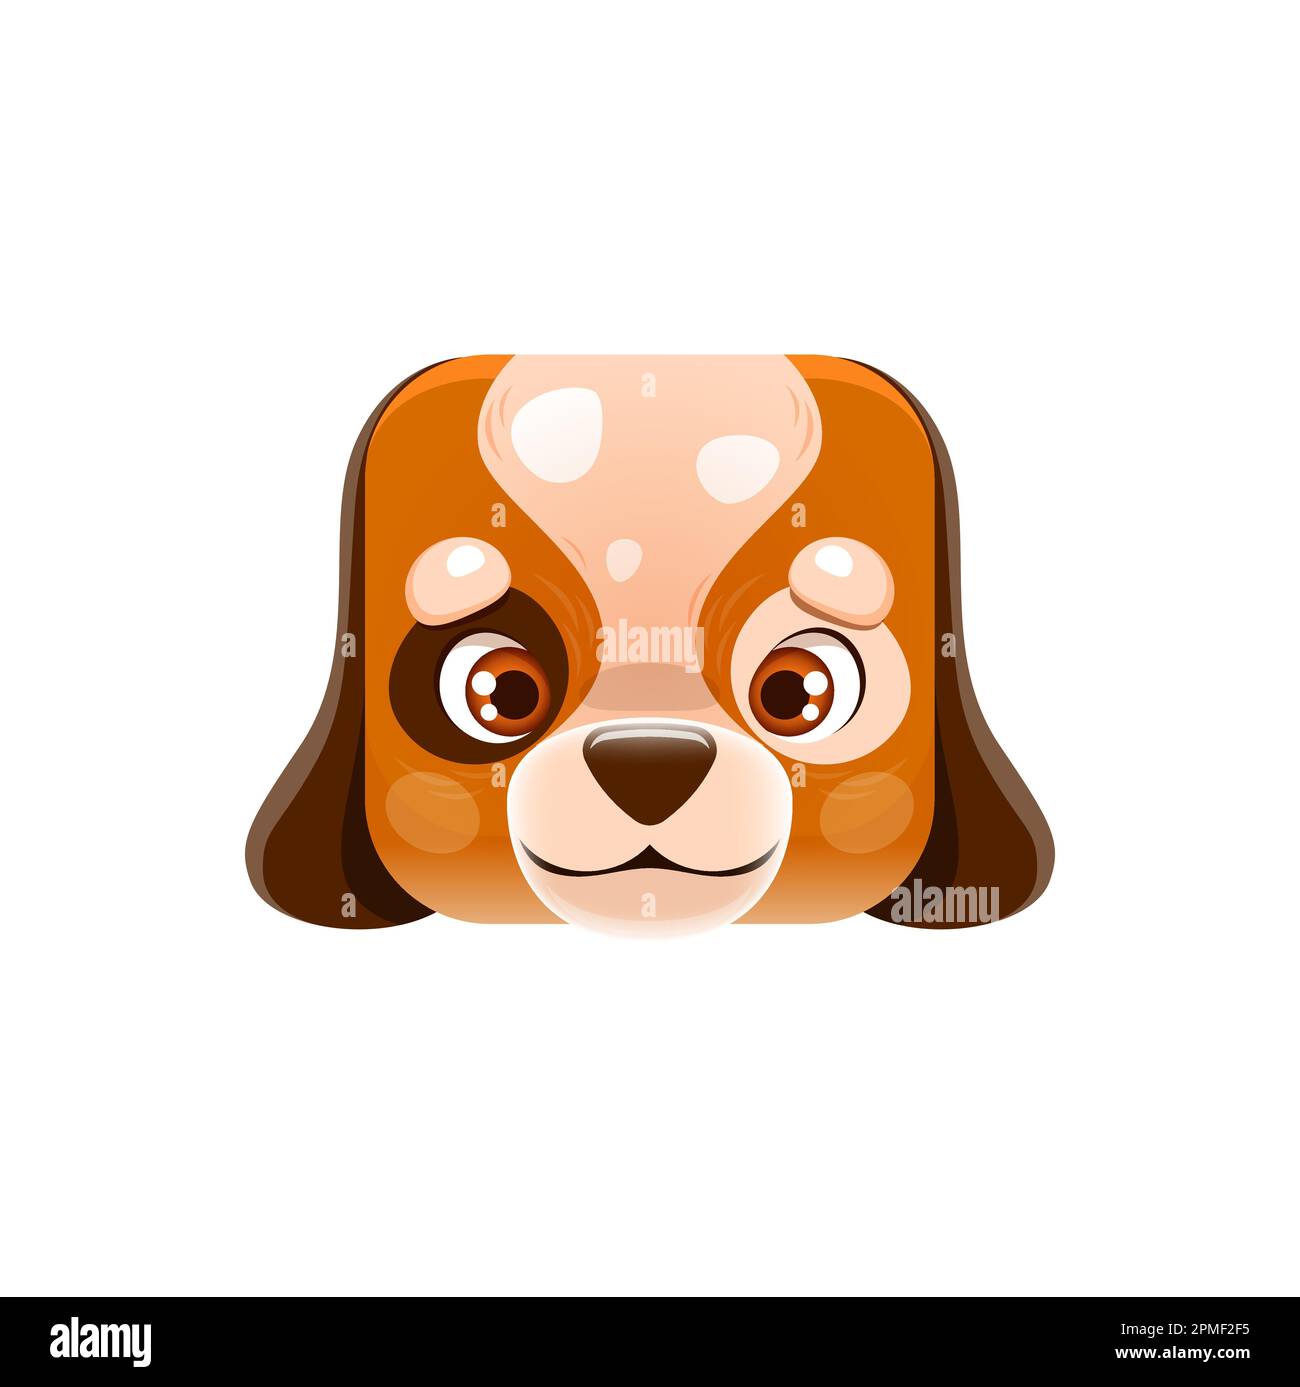 Cartoon-Hund Kawaii, viereckiges Tiergesicht, süßes Hundeporträt. Isolierter Vektorhund, Haustier-Charakter. App-Schaltfläche, Symbol, grafisches Designelement Stock Vektor